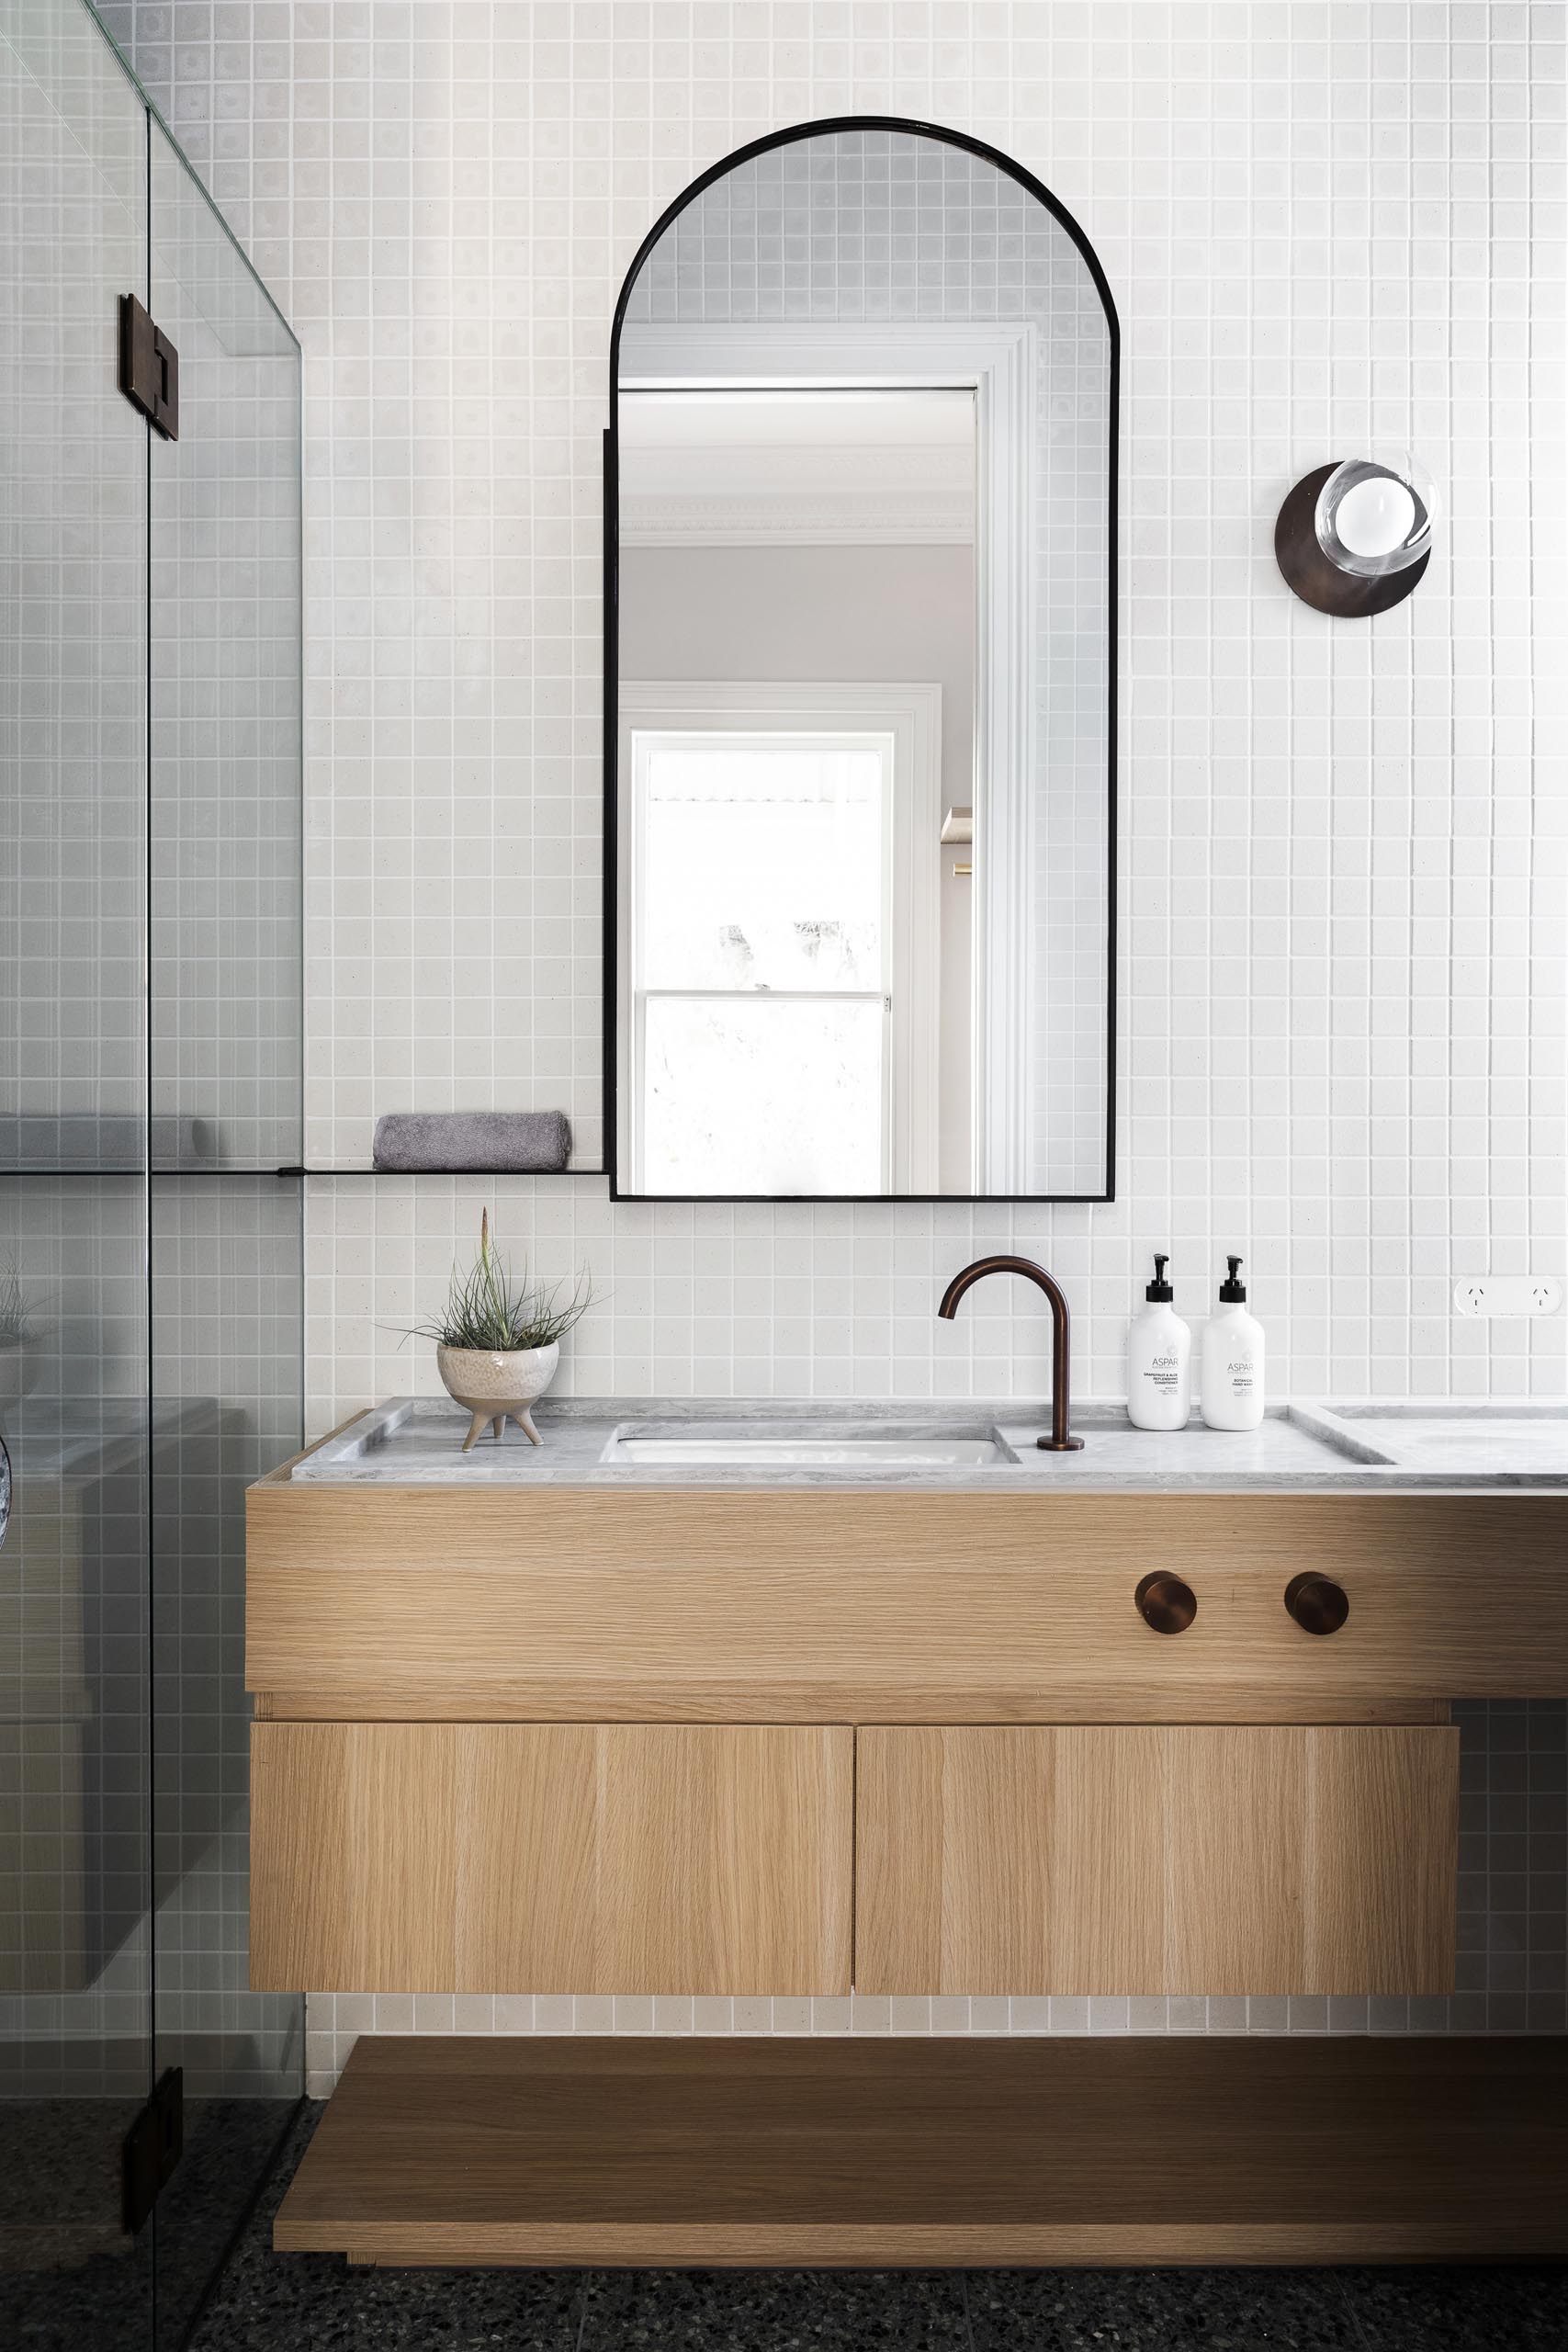 Современная ванная комната с деревянным туалетным столиком, кафельной стеной и арочным зеркалом.